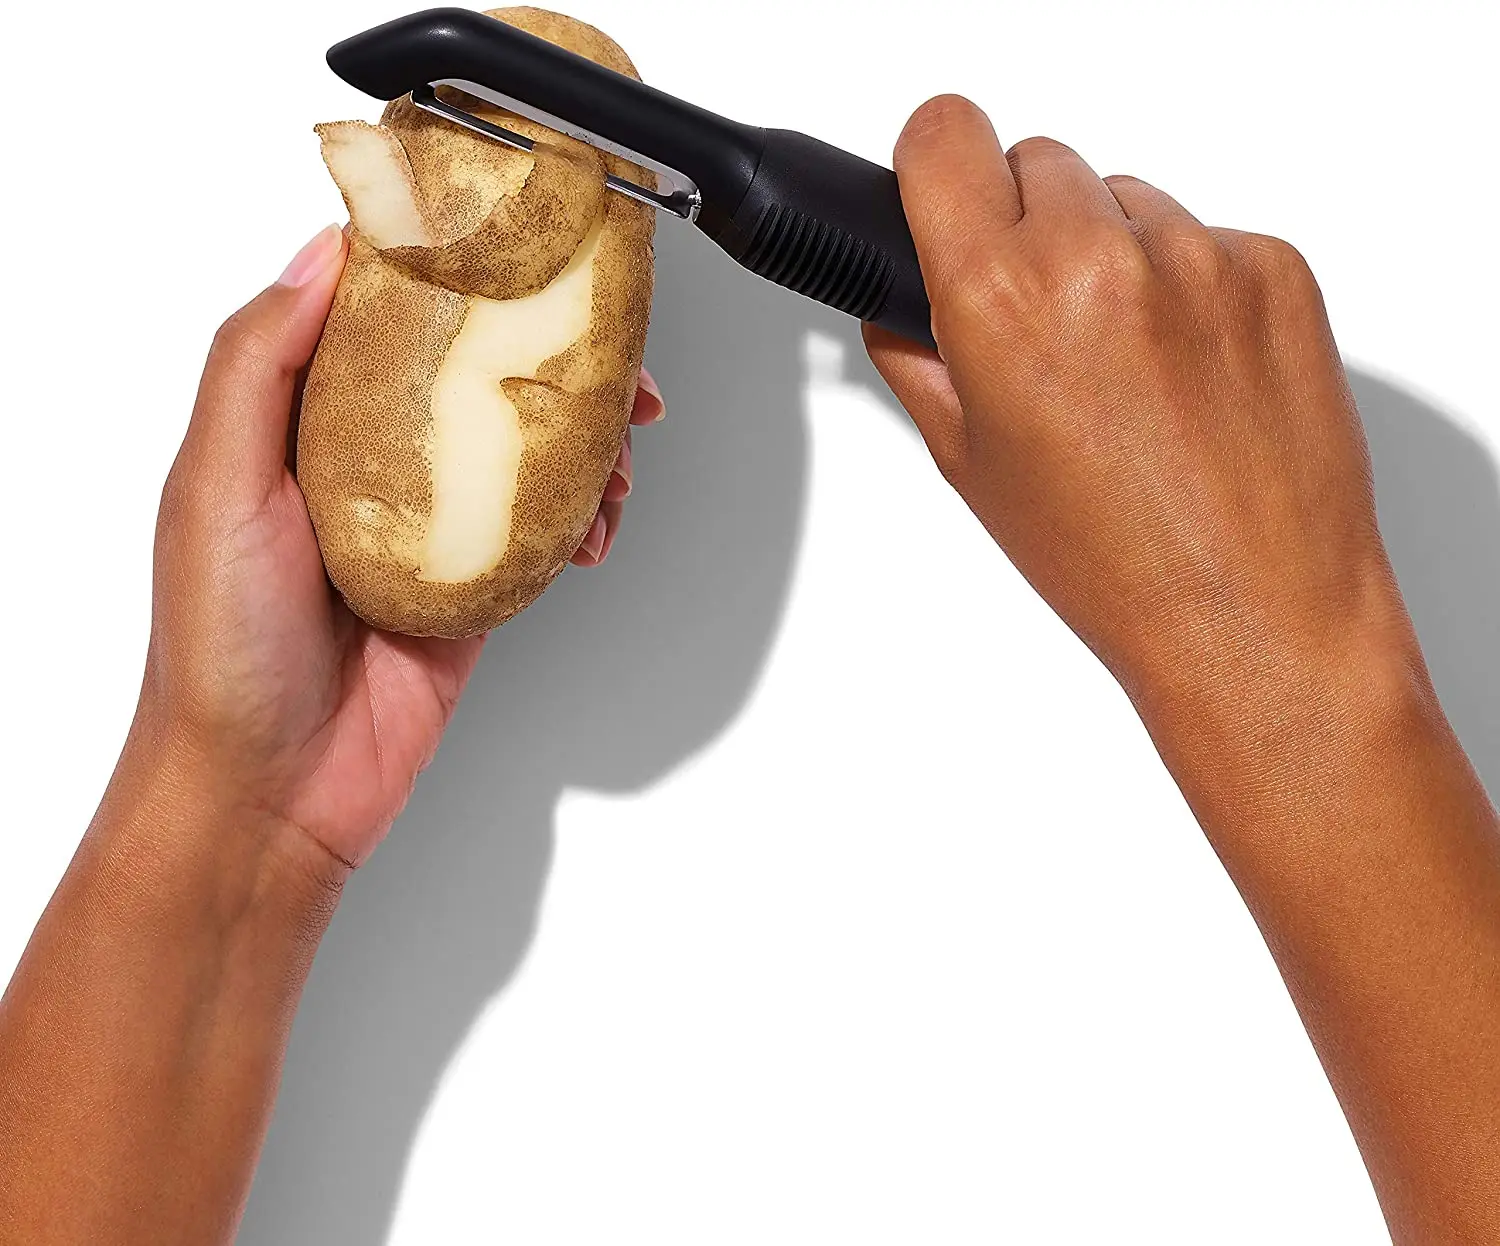 New Multi-Function Peeler Stainless Steel Peelers Vegetable And Fruit Peeling Knife Kitchen Tool Gadget